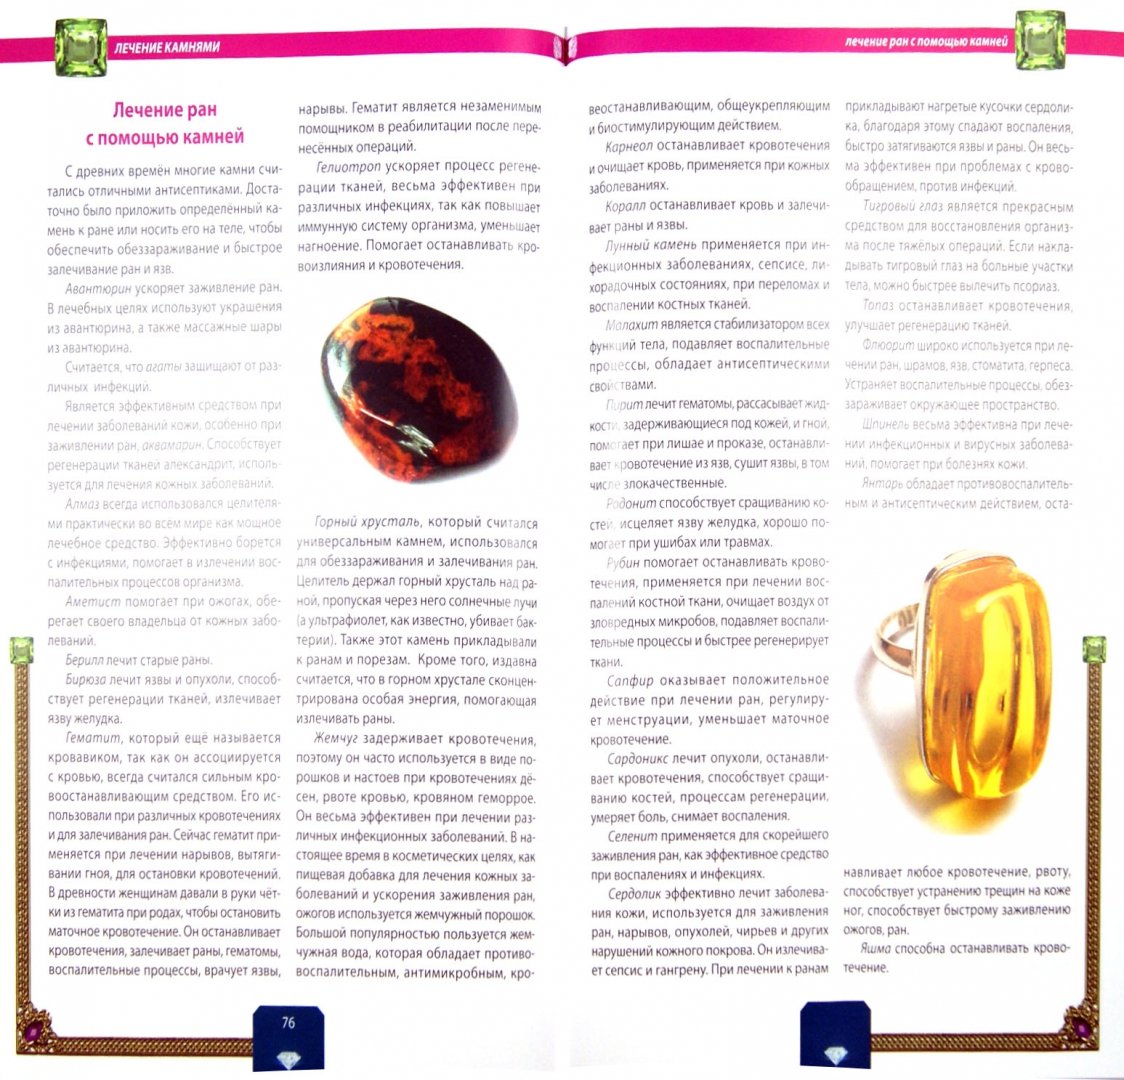 Иллюстрация 1 из 9 для Целительная сила камней и минералов - Ирина Булгакова | Лабиринт - книги. Источник: Лабиринт